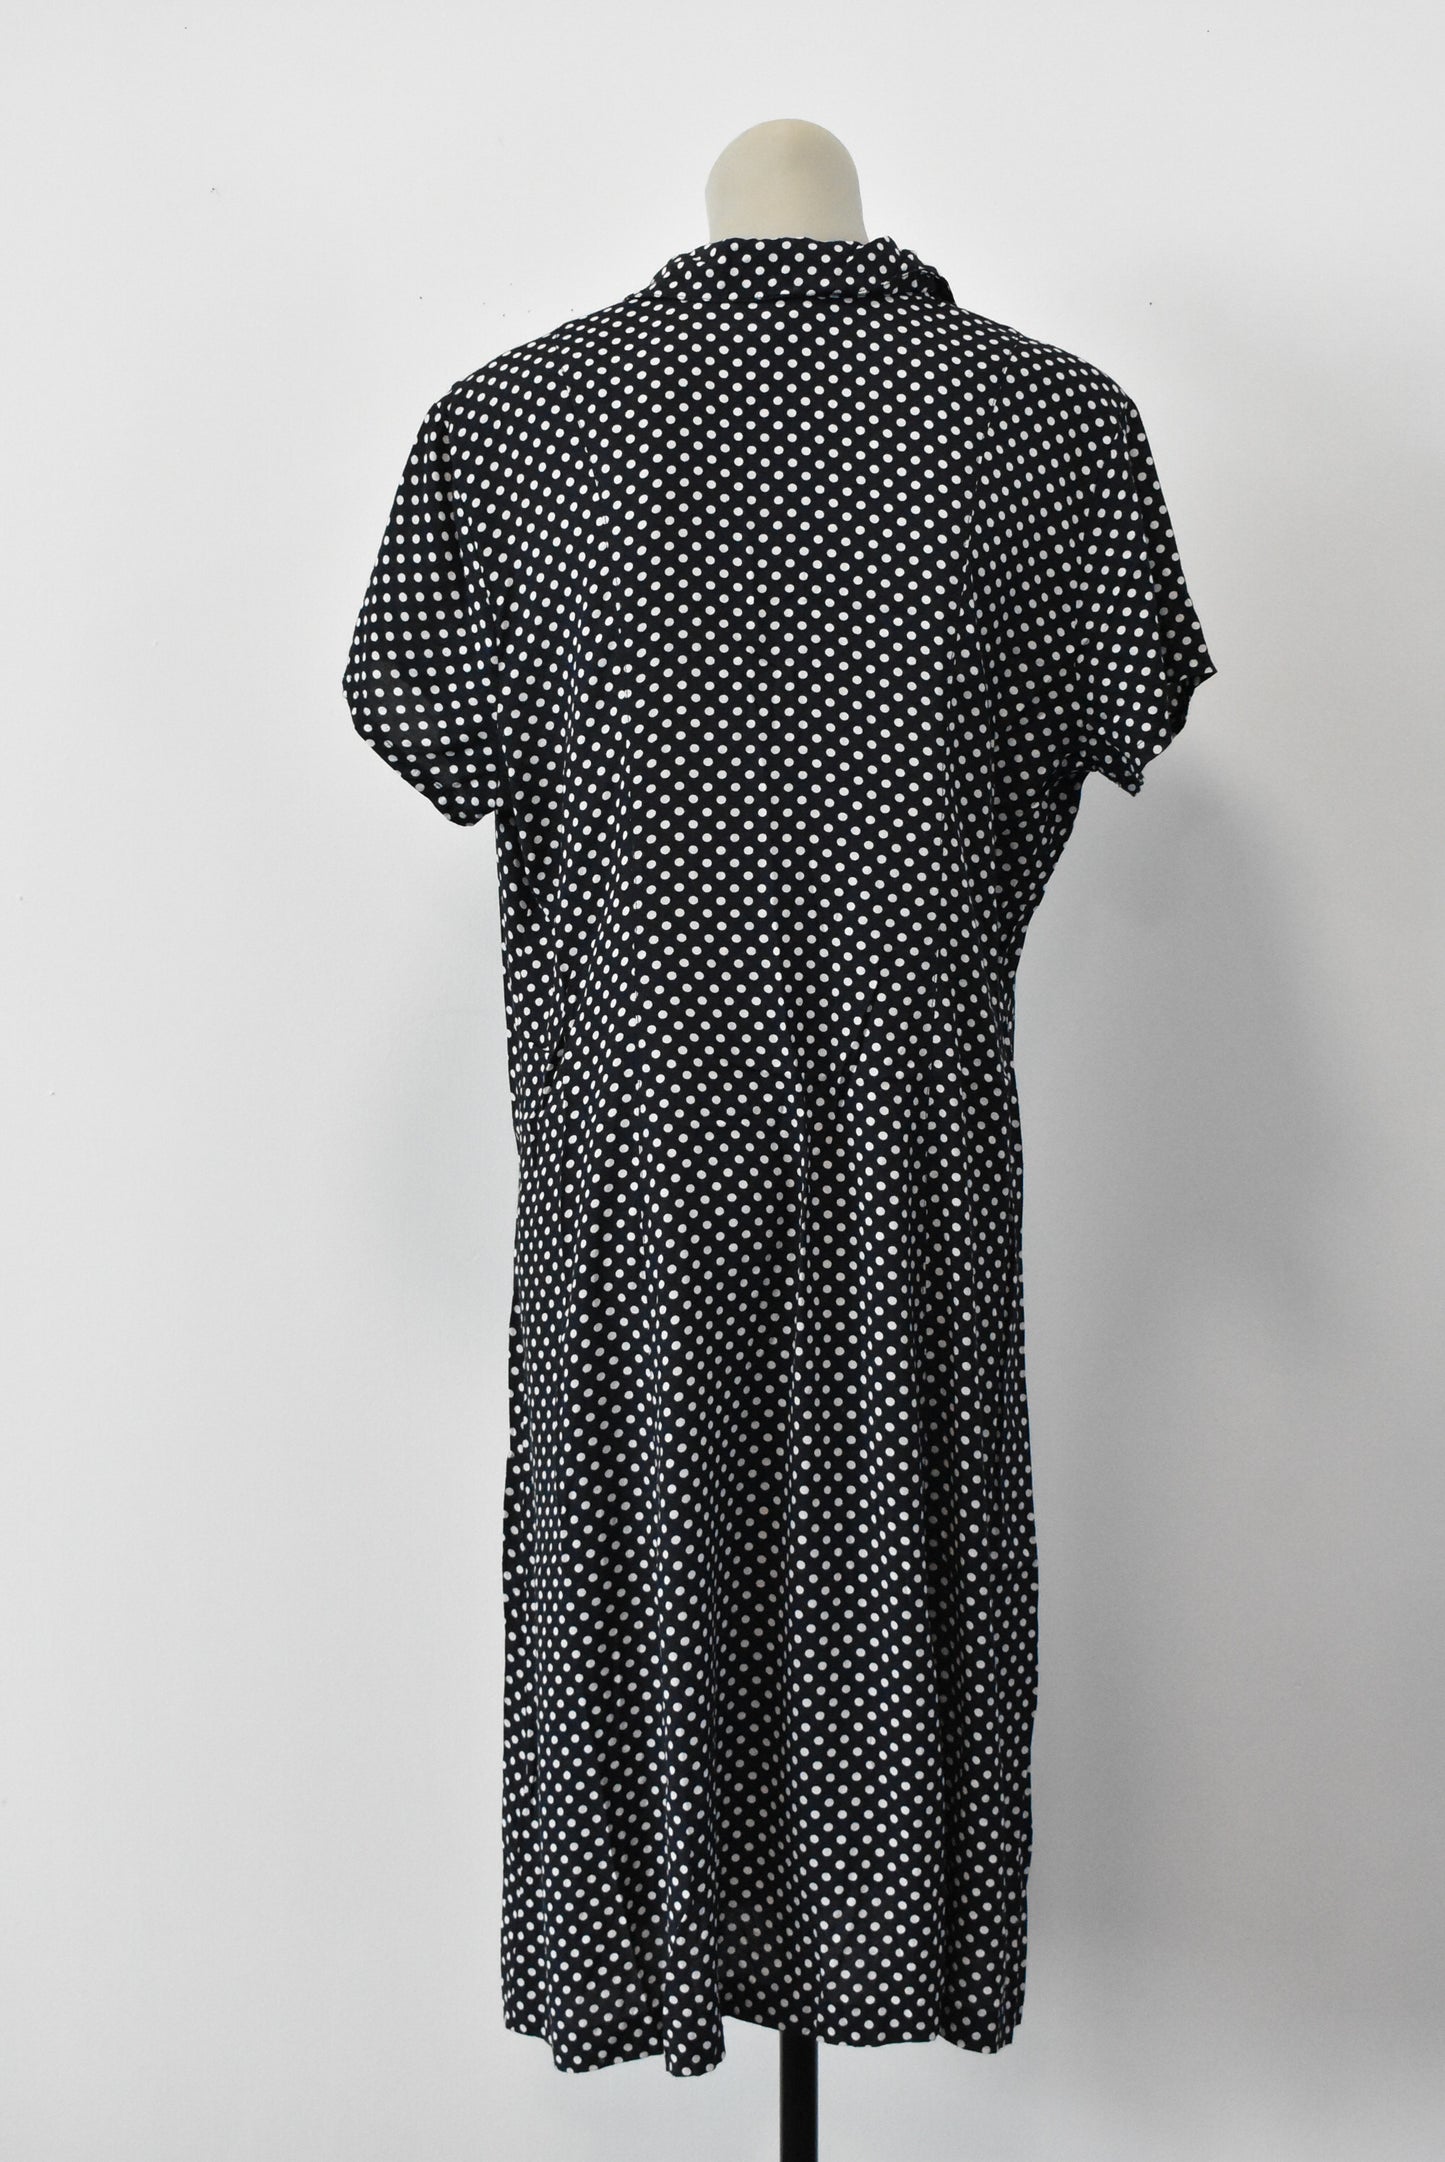 I.Q. retro polka dot dress, size 16